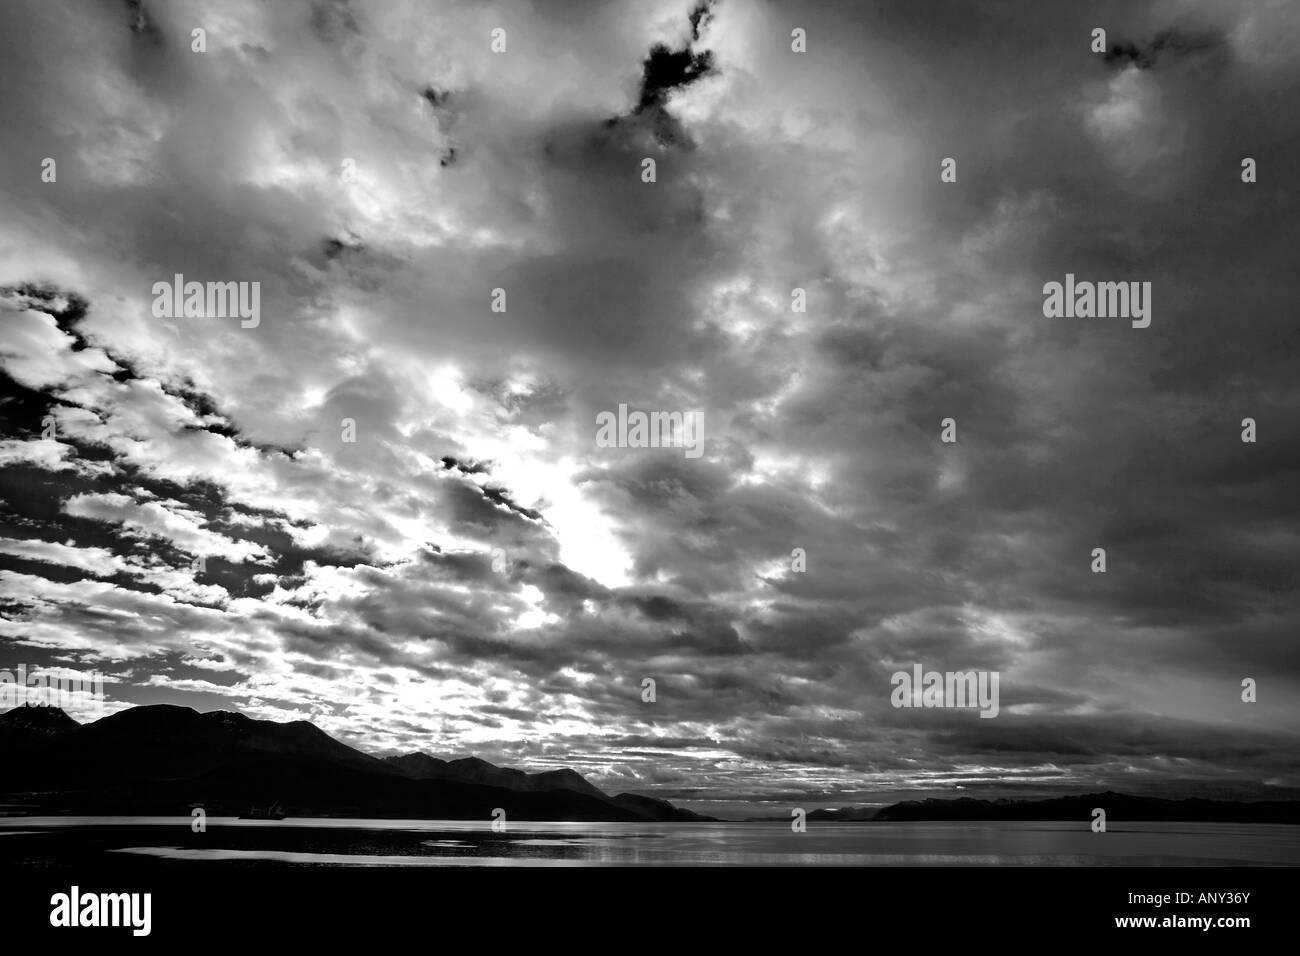 Argentina, Tierra del Fuego, Ushuaia, Canale di Beagle. Nel tardo pomeriggio il cloud e meteo costruire fino oltre il Canale di Beagle viste. Foto Stock